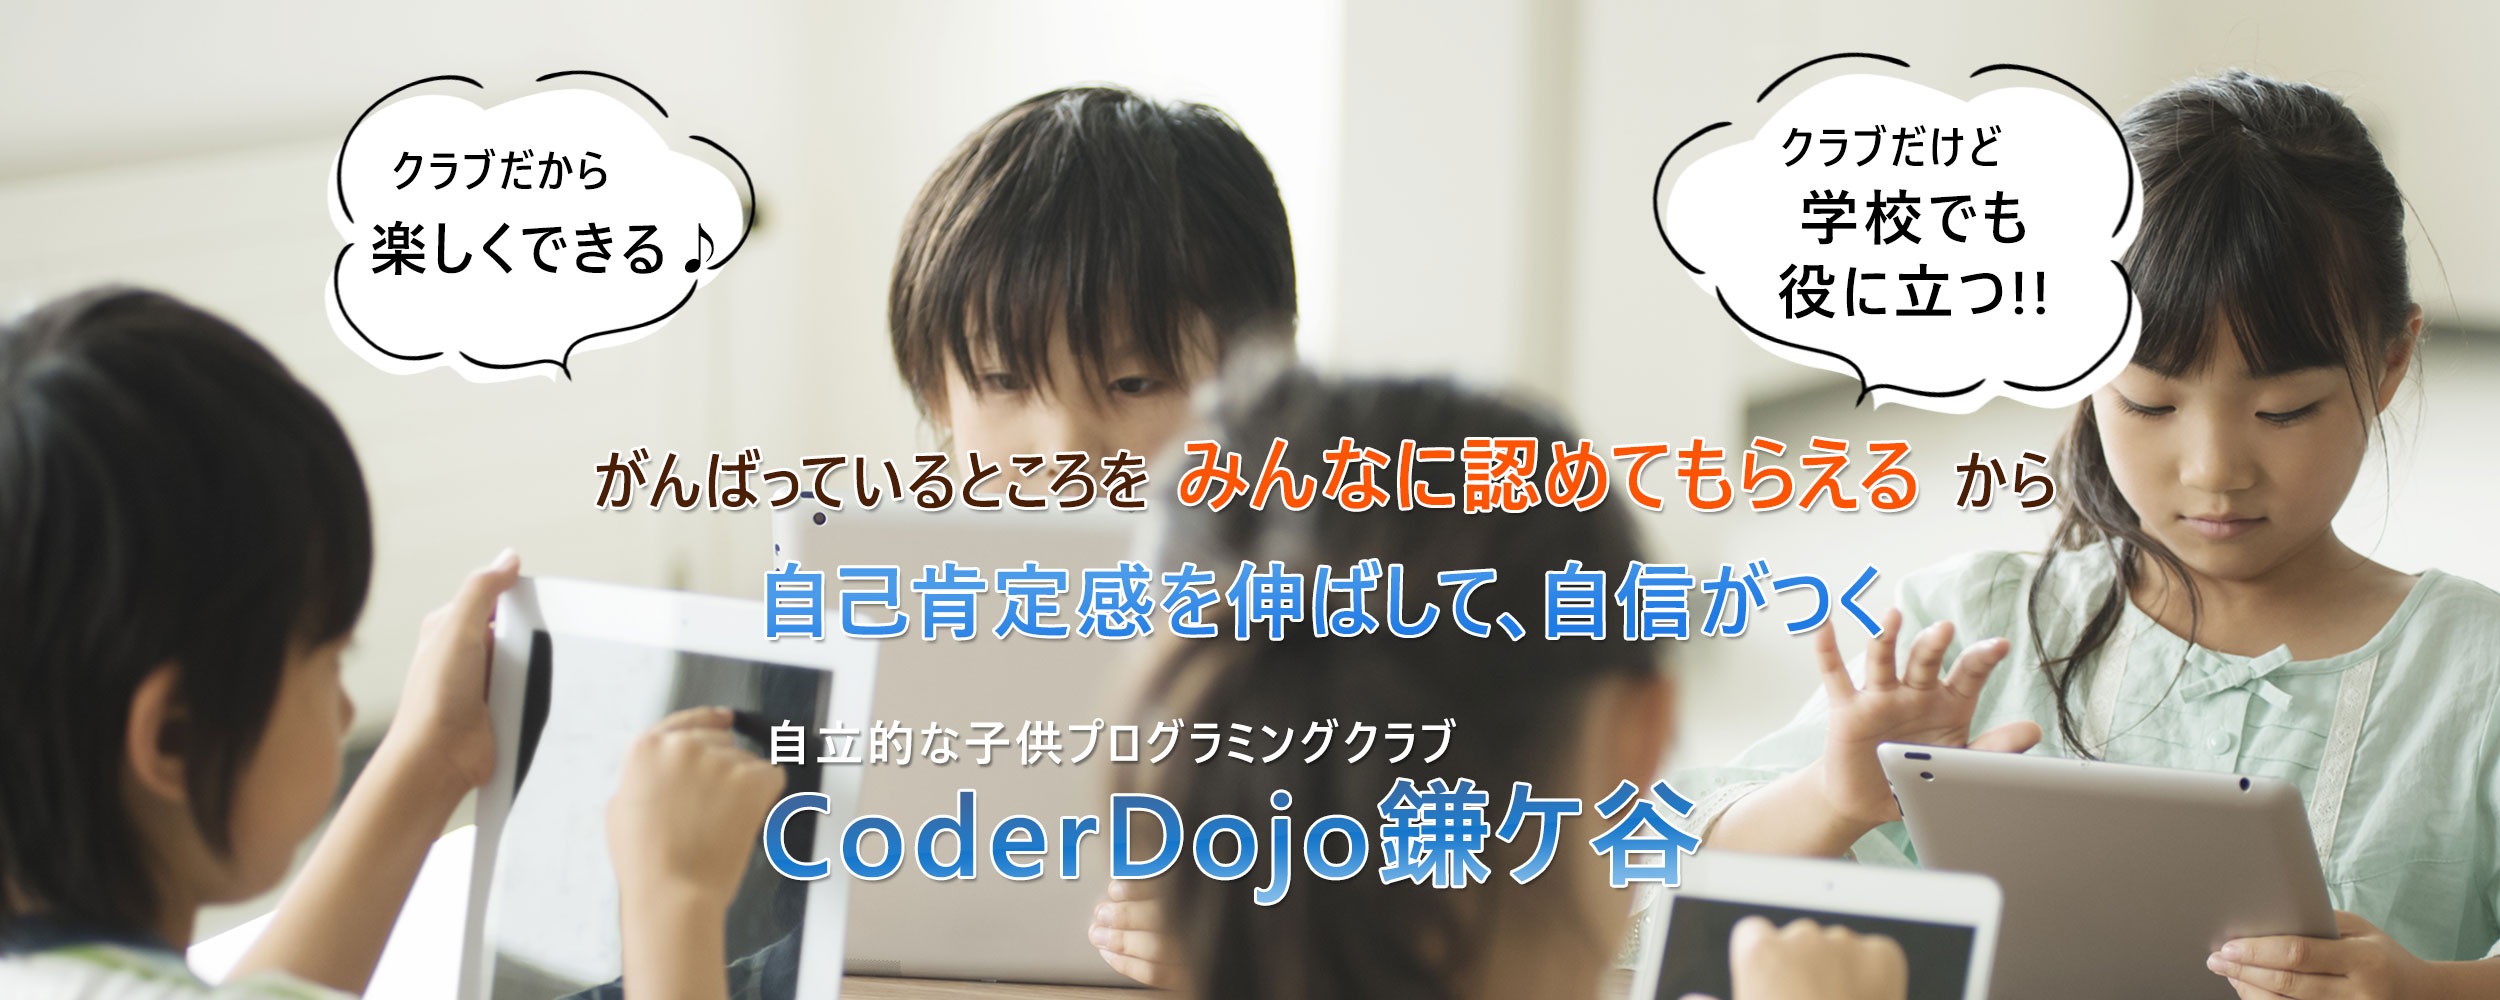 子供プログラミングクラブ CoderDojo鎌ケ谷